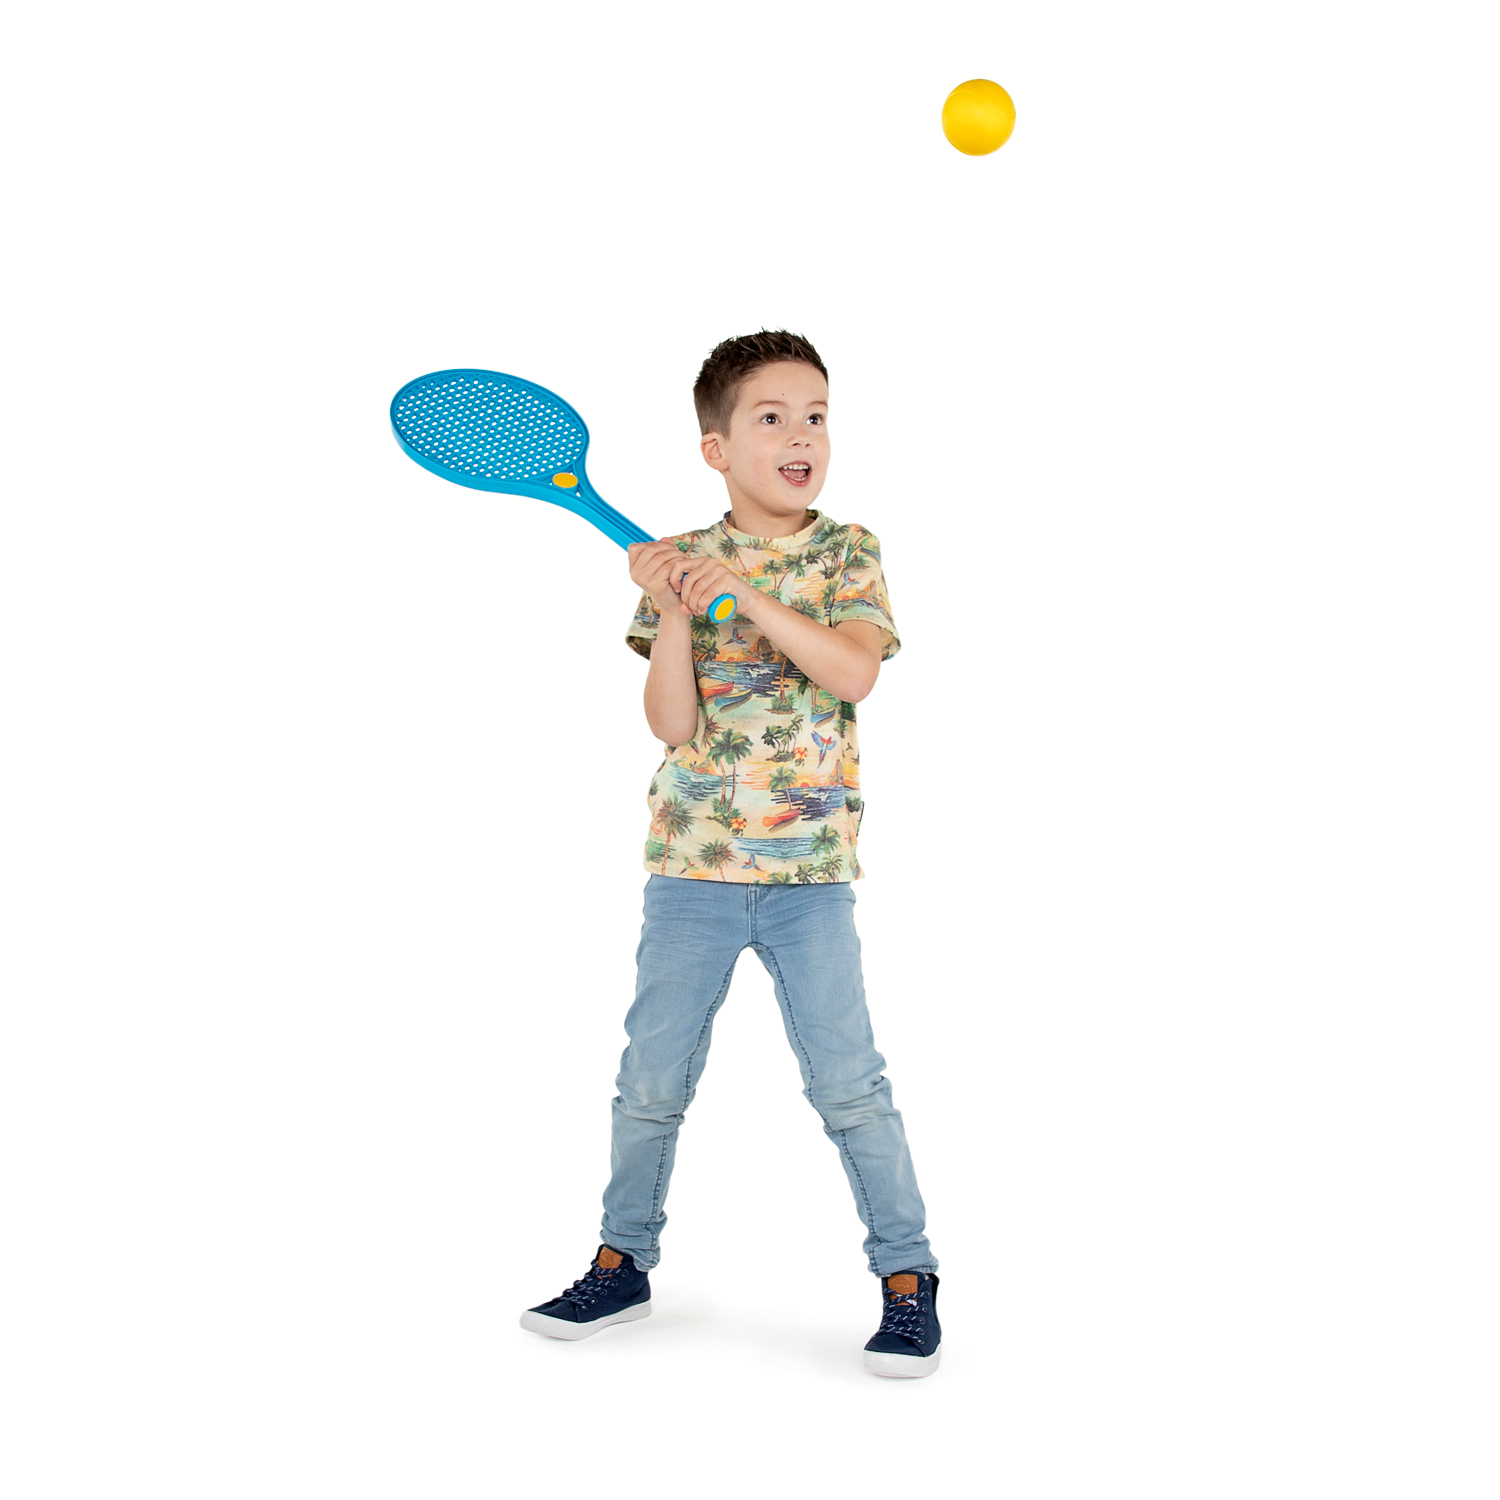 Raquette de tennis Junior Color avec Balle